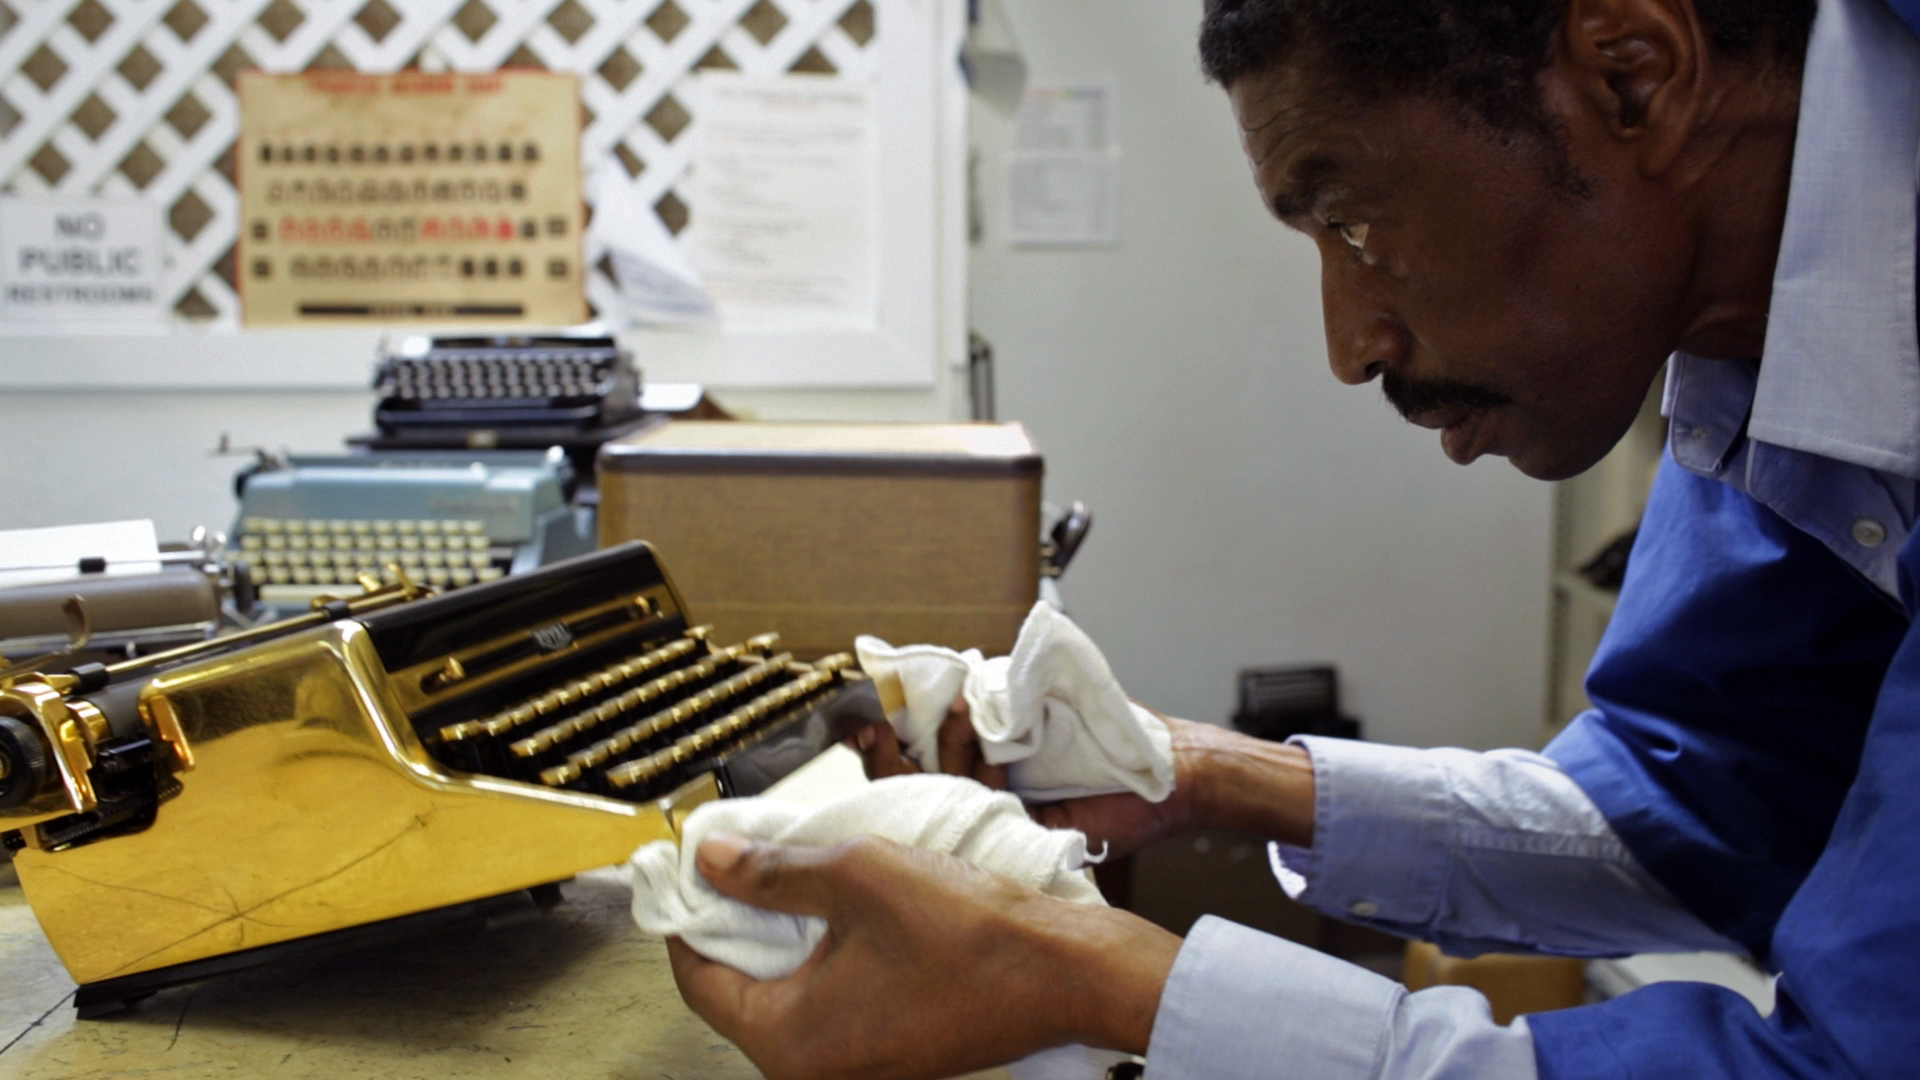 Ken Alexander at California Typewriter